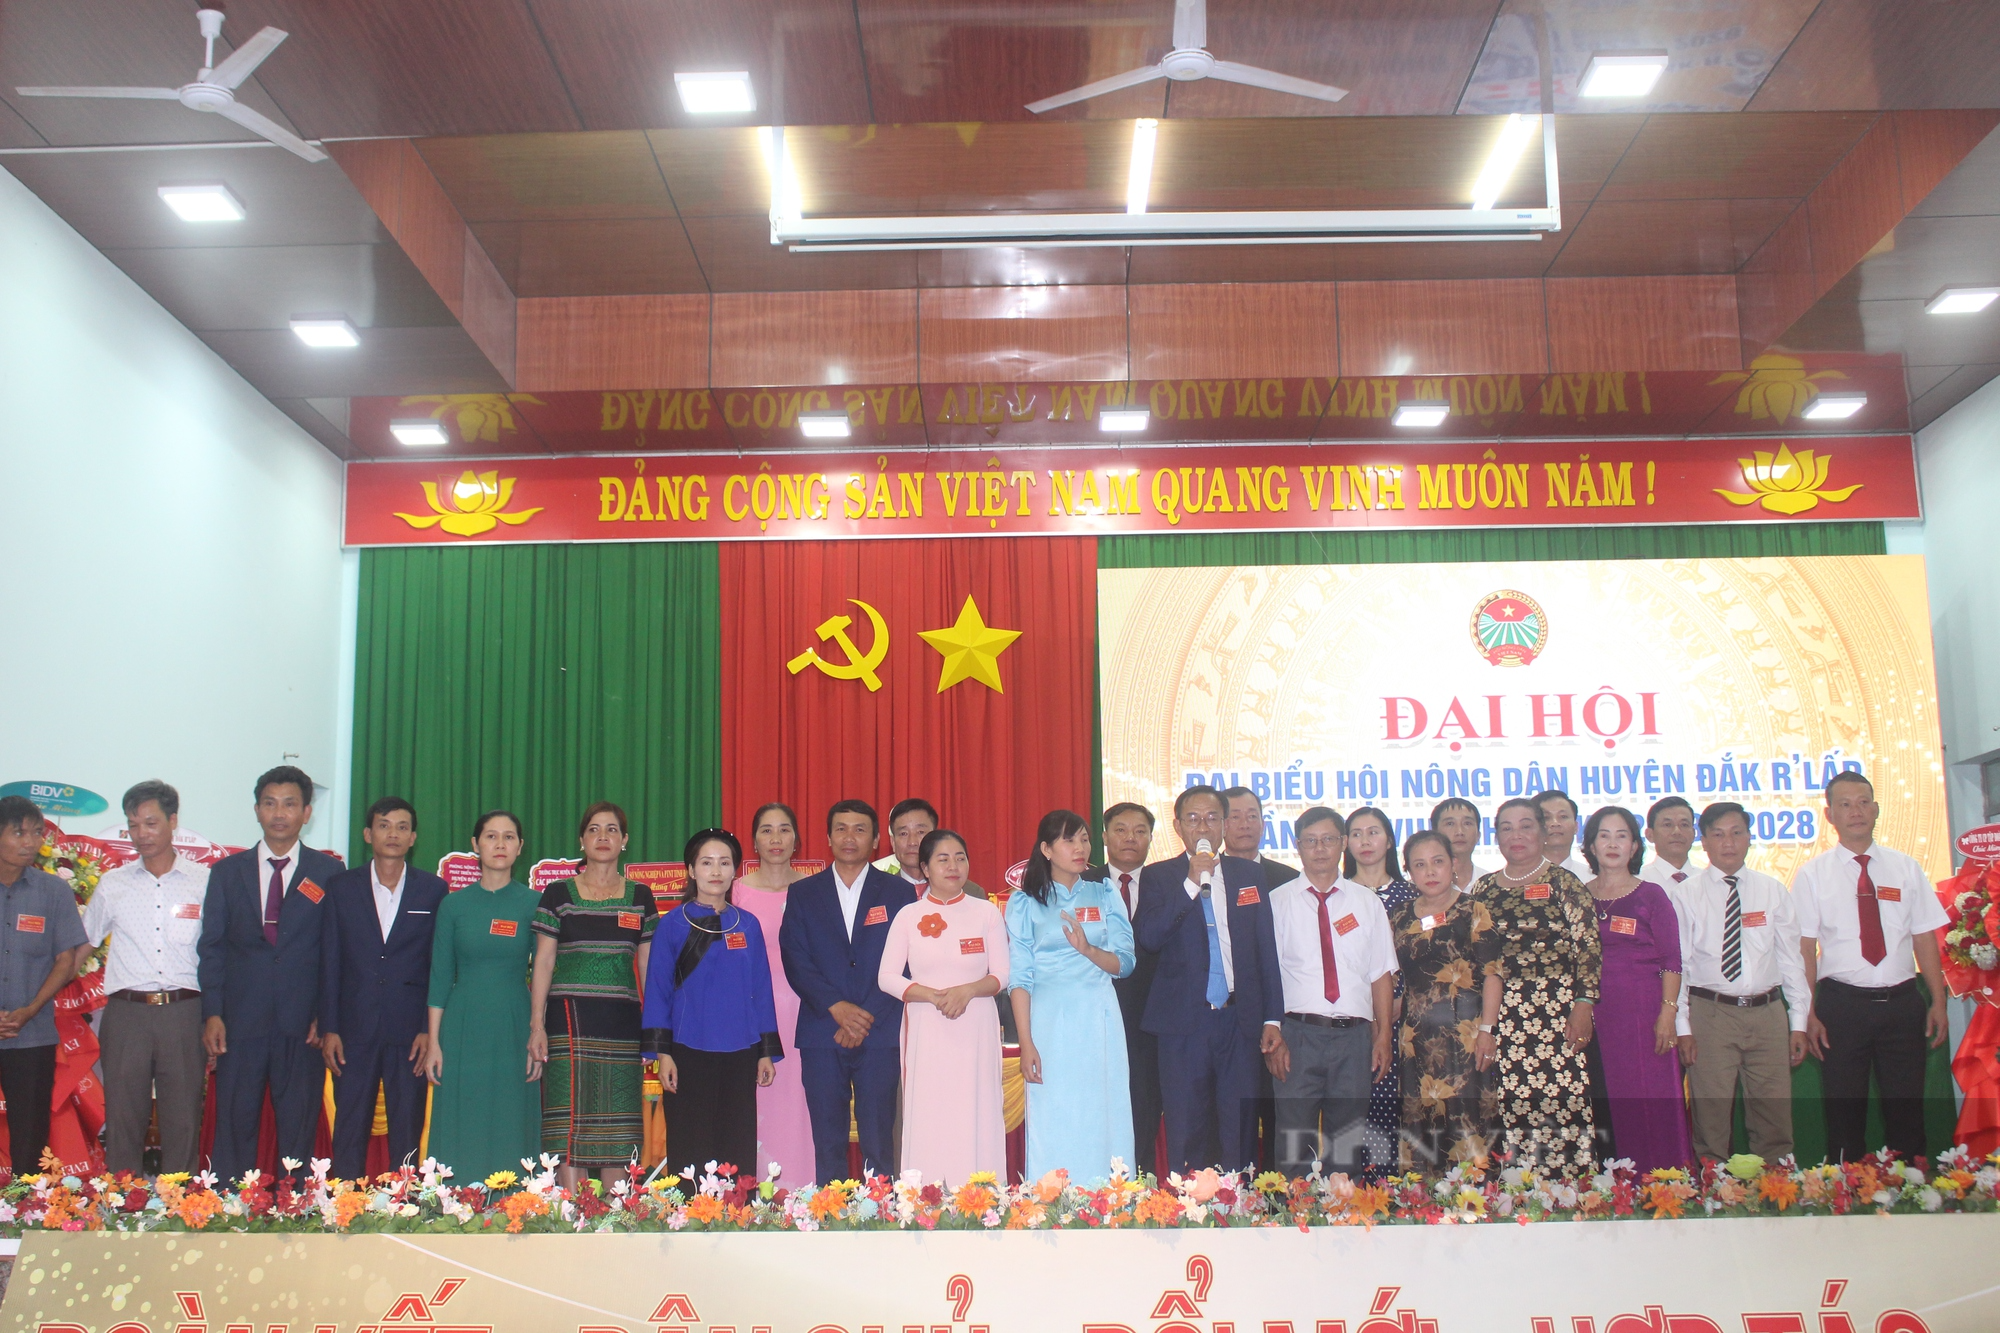 Đại hội Hội nông dân huyện Đắk R'lấp: Nông dân đóng góp hơn 125 tỷ đồng phát triển hạ tầng cơ sở nông thôn - Ảnh 2.